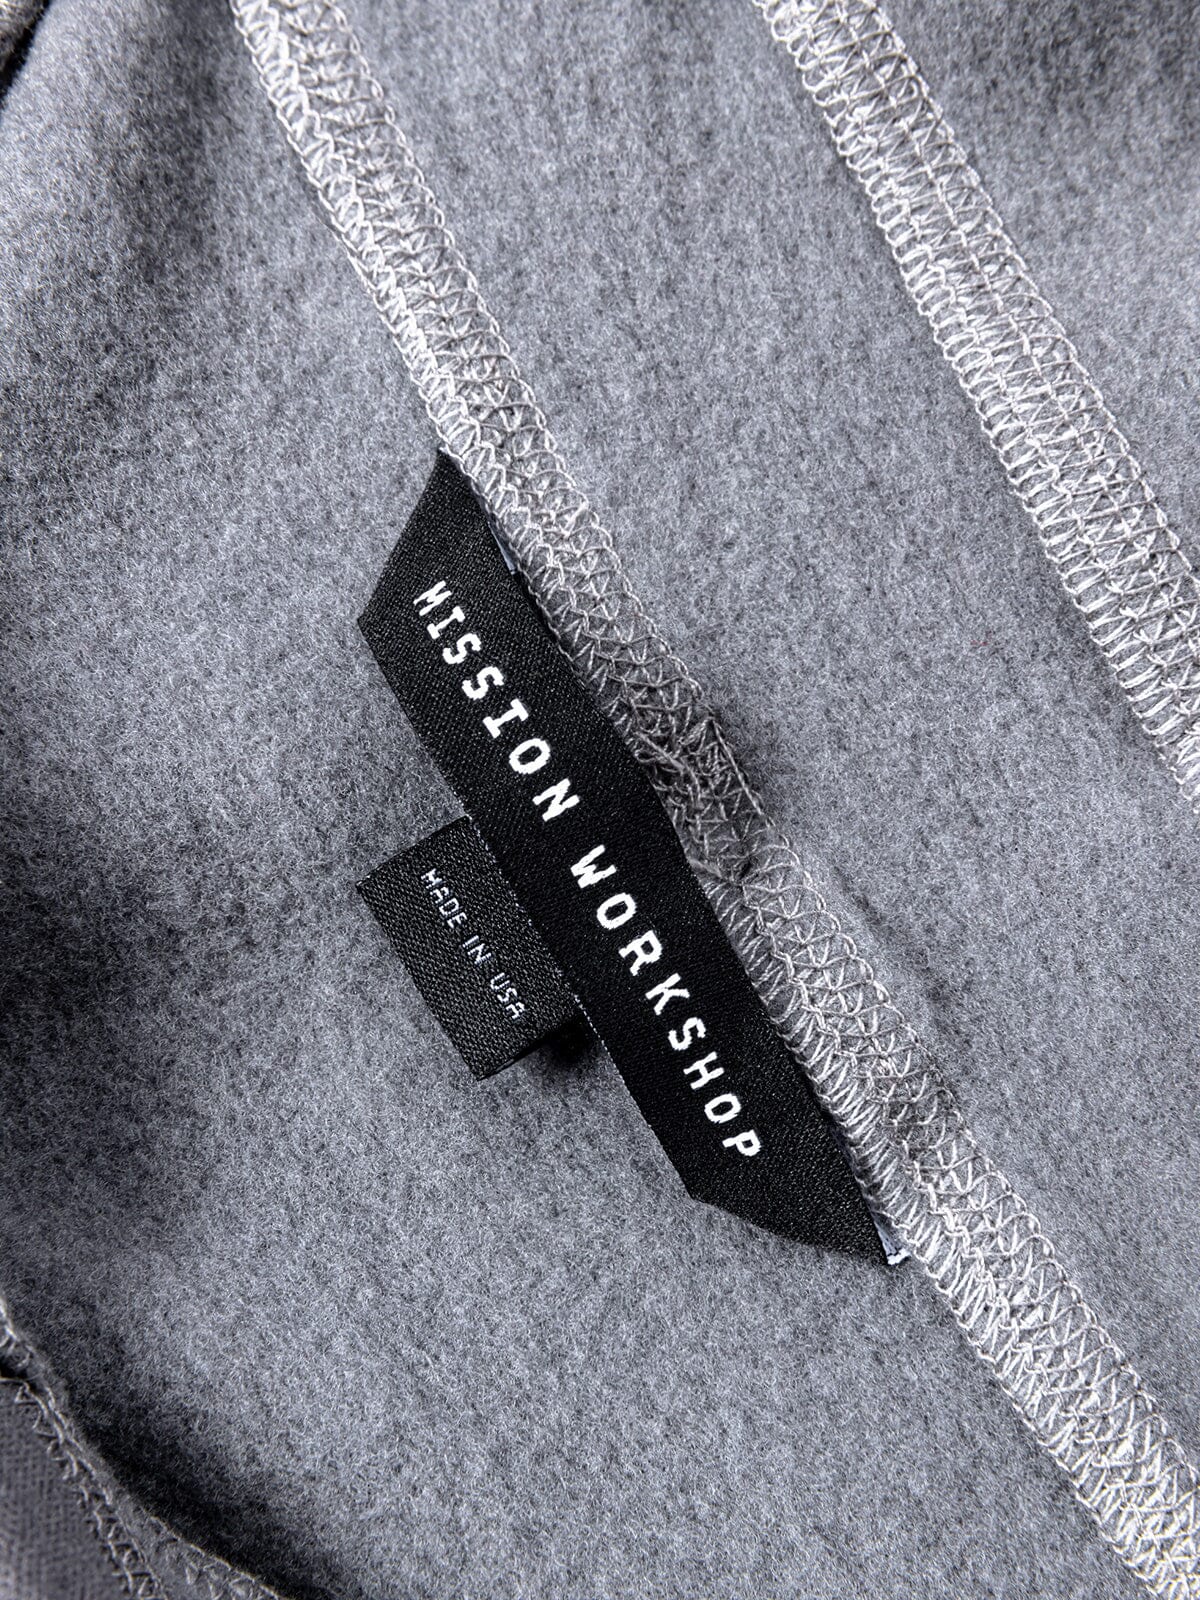 Faroe : Power Wool by Mission Workshop - Bolsas impermeables y ropa técnica - San Francisco y Los Angeles - Construidas para durar - Garantizadas para siempre